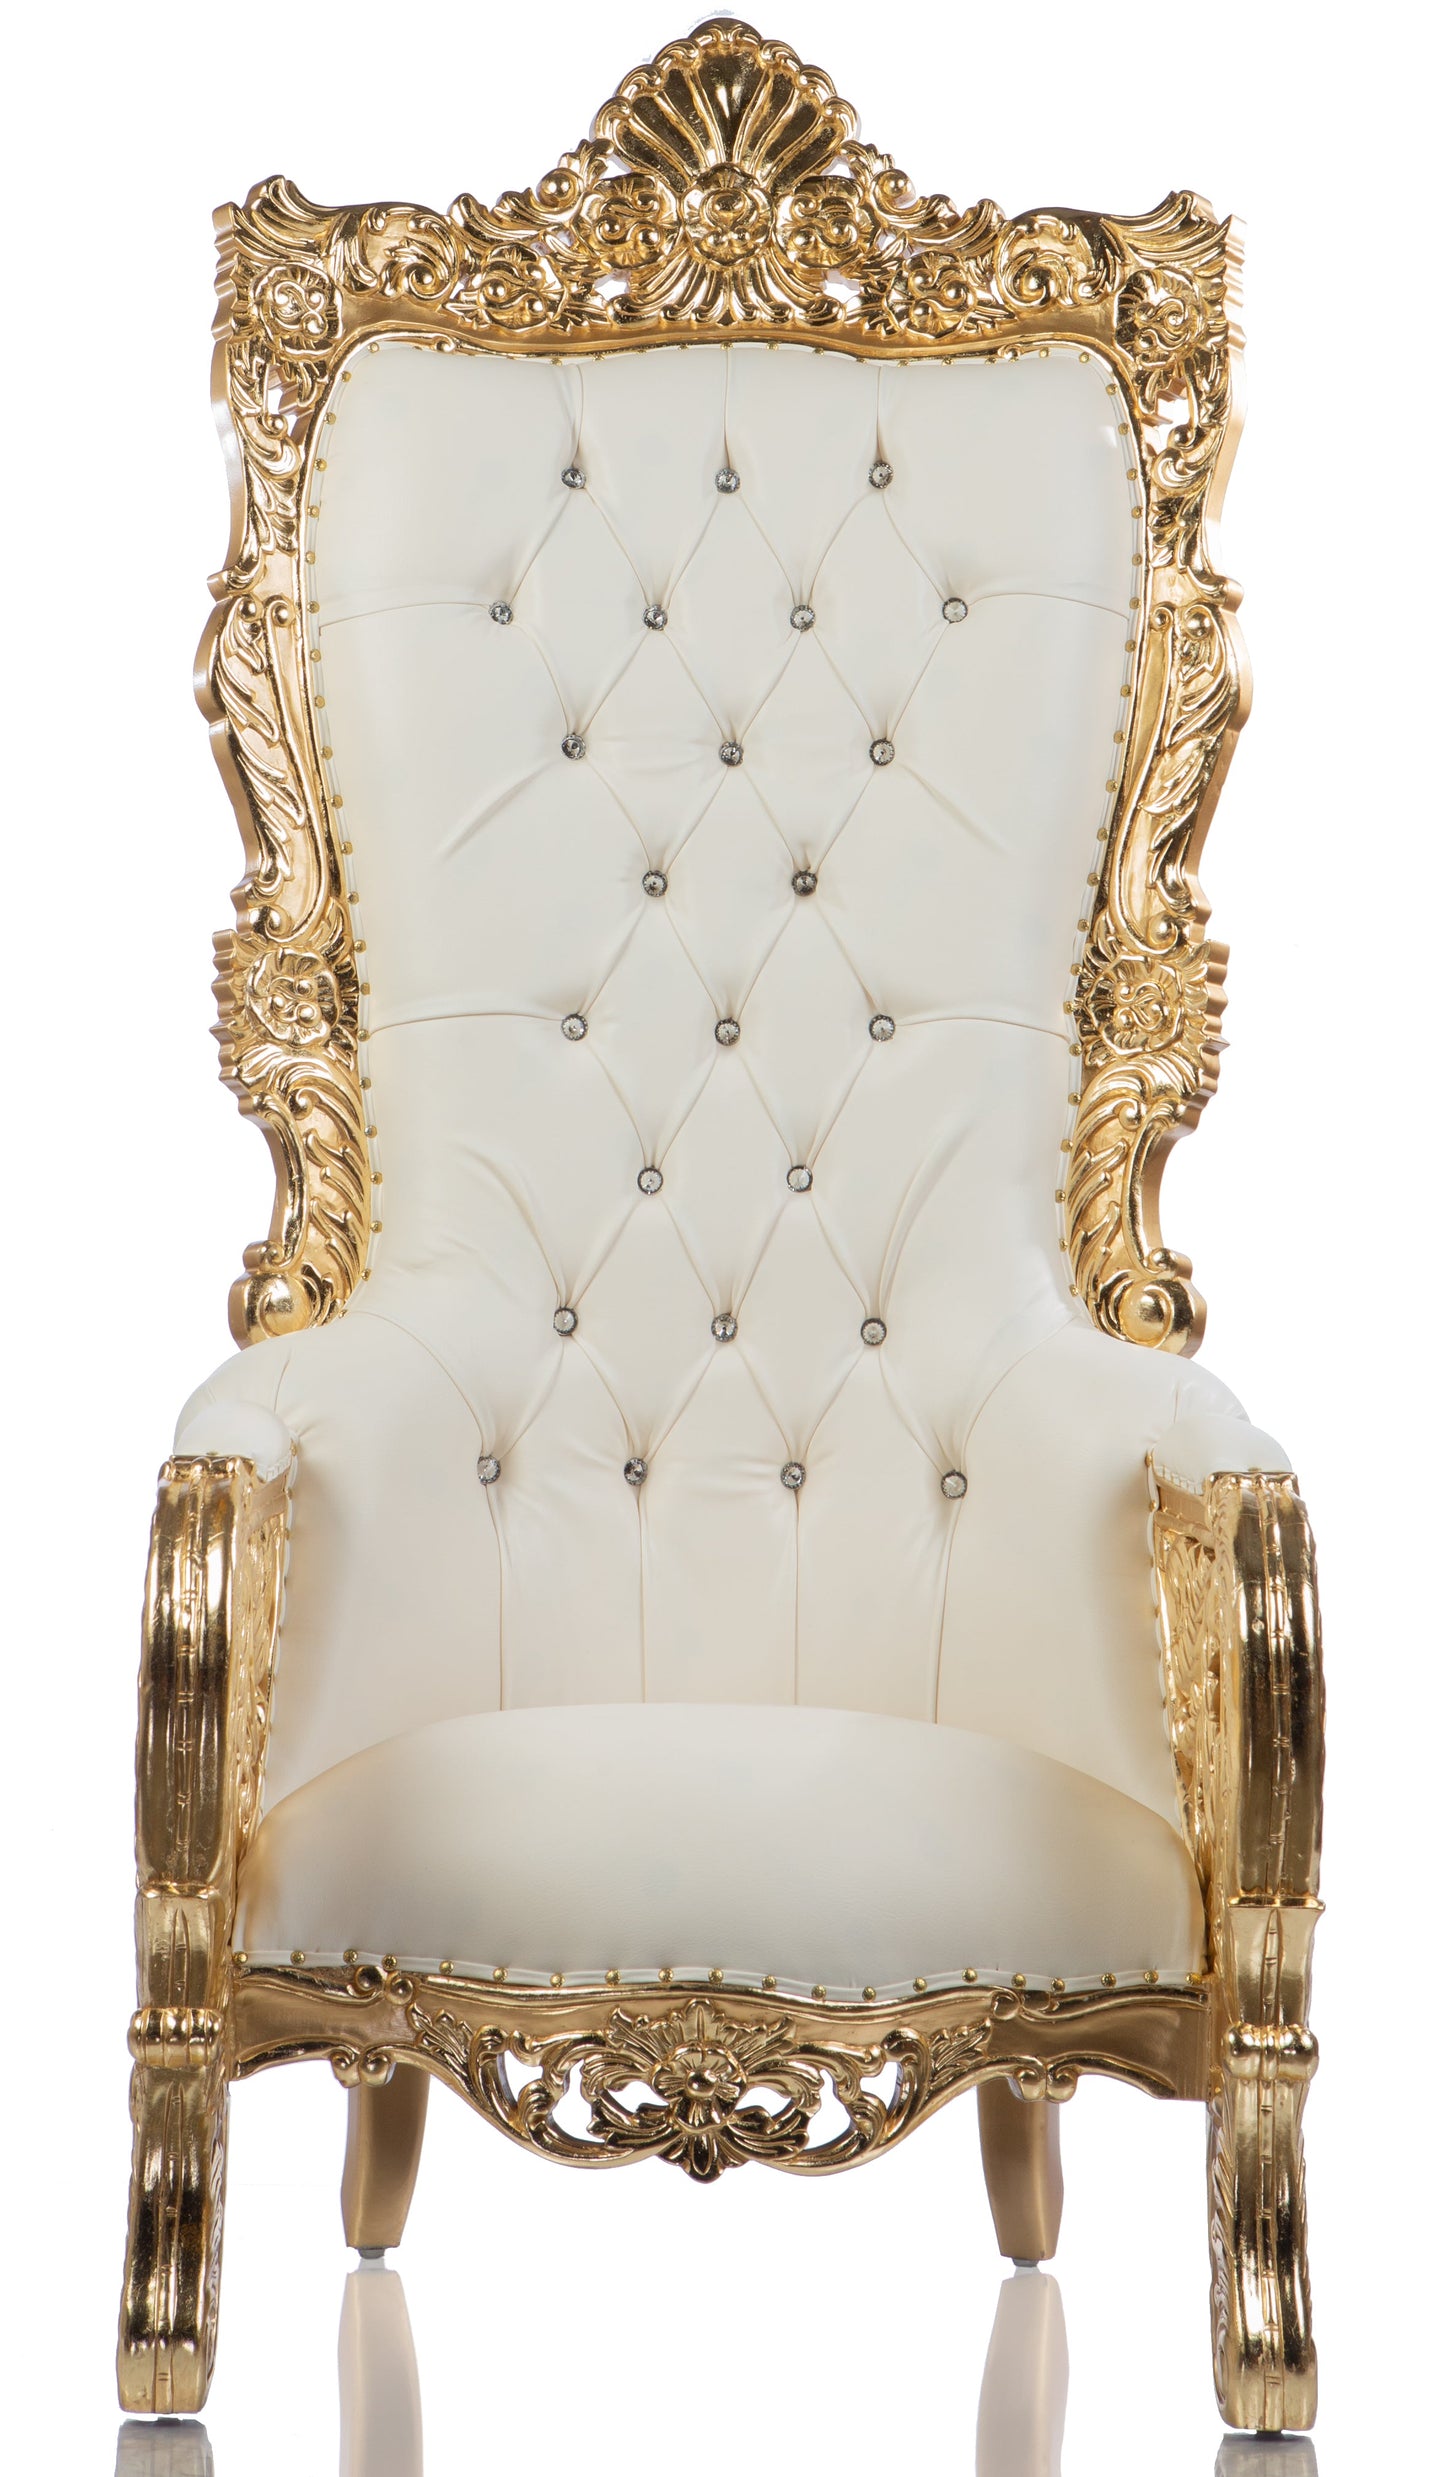 Queen Bellagio Throne